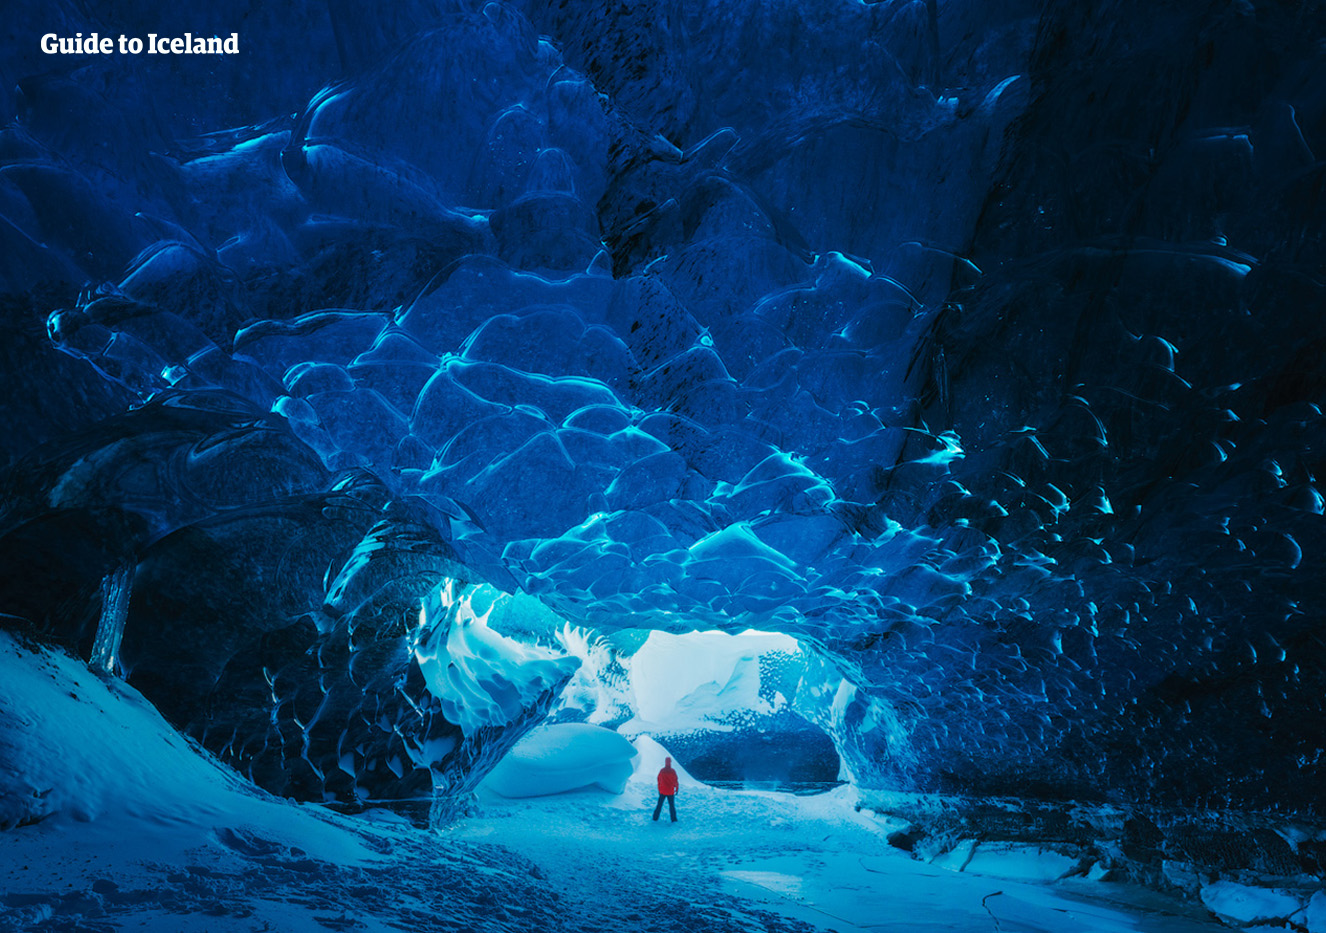 Los tours de espeleología en el glaciar Vatnajökull te llevarán a un mundo escondido dentro de la capa de hielo más grande de Europa.